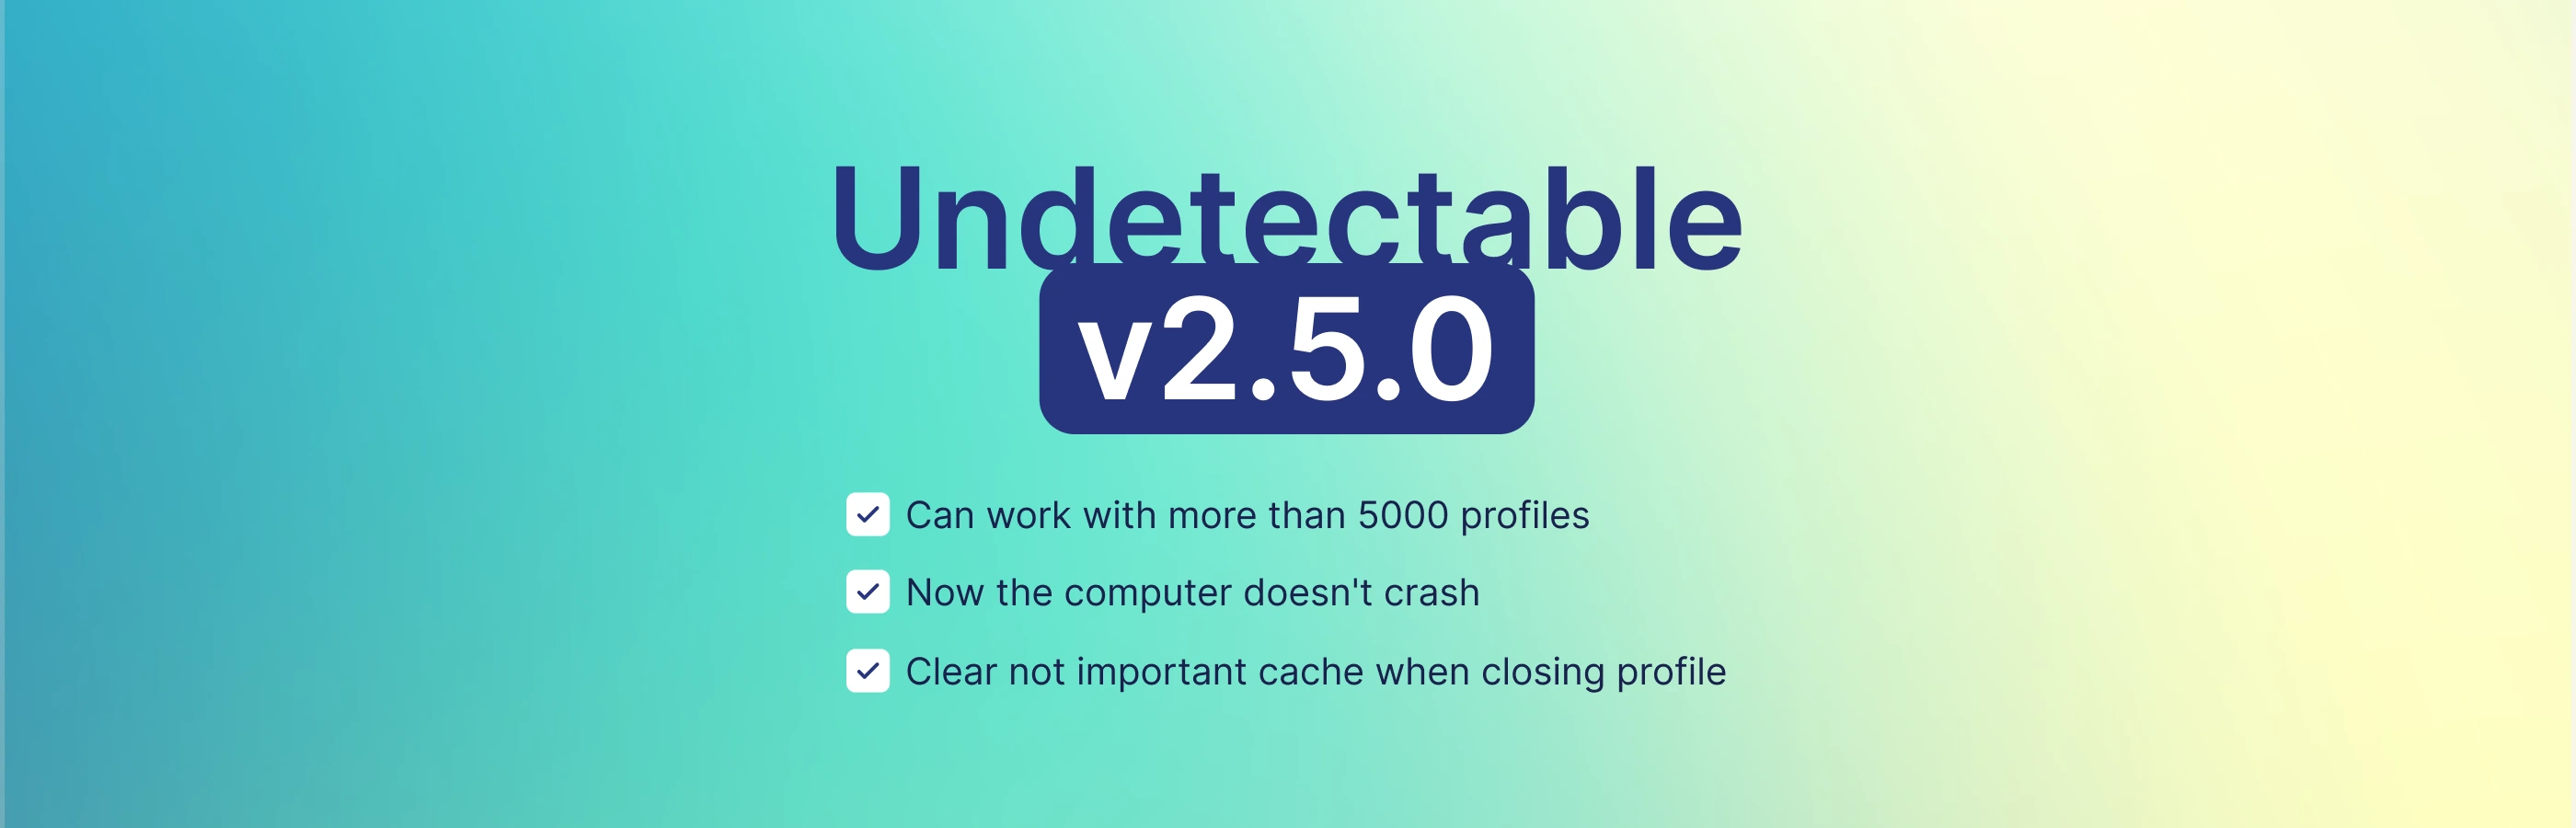 Undetectable 2.5.0: tối ưu trình duyệt cho các dự án lớn